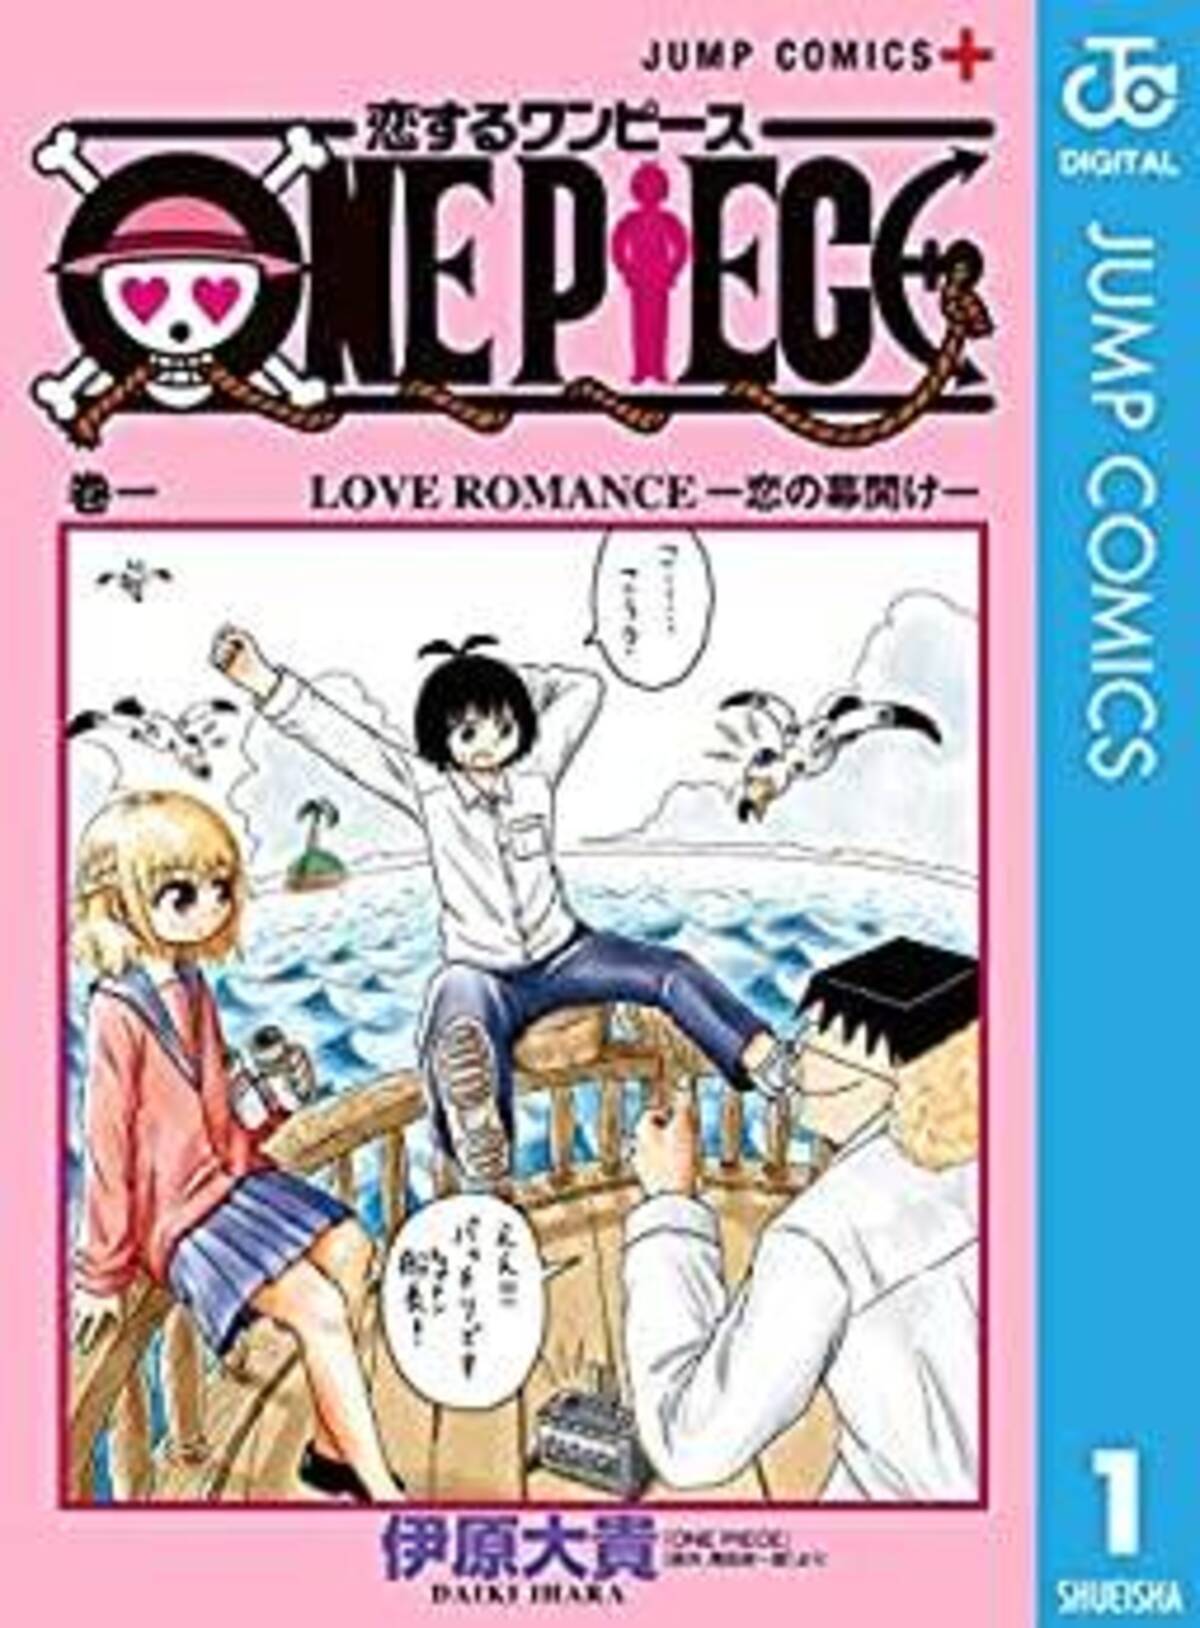 ドン引きレベル One Piece スピンオフギャグの知識と愛がヤバすぎる 年5月18日 エキサイトニュース